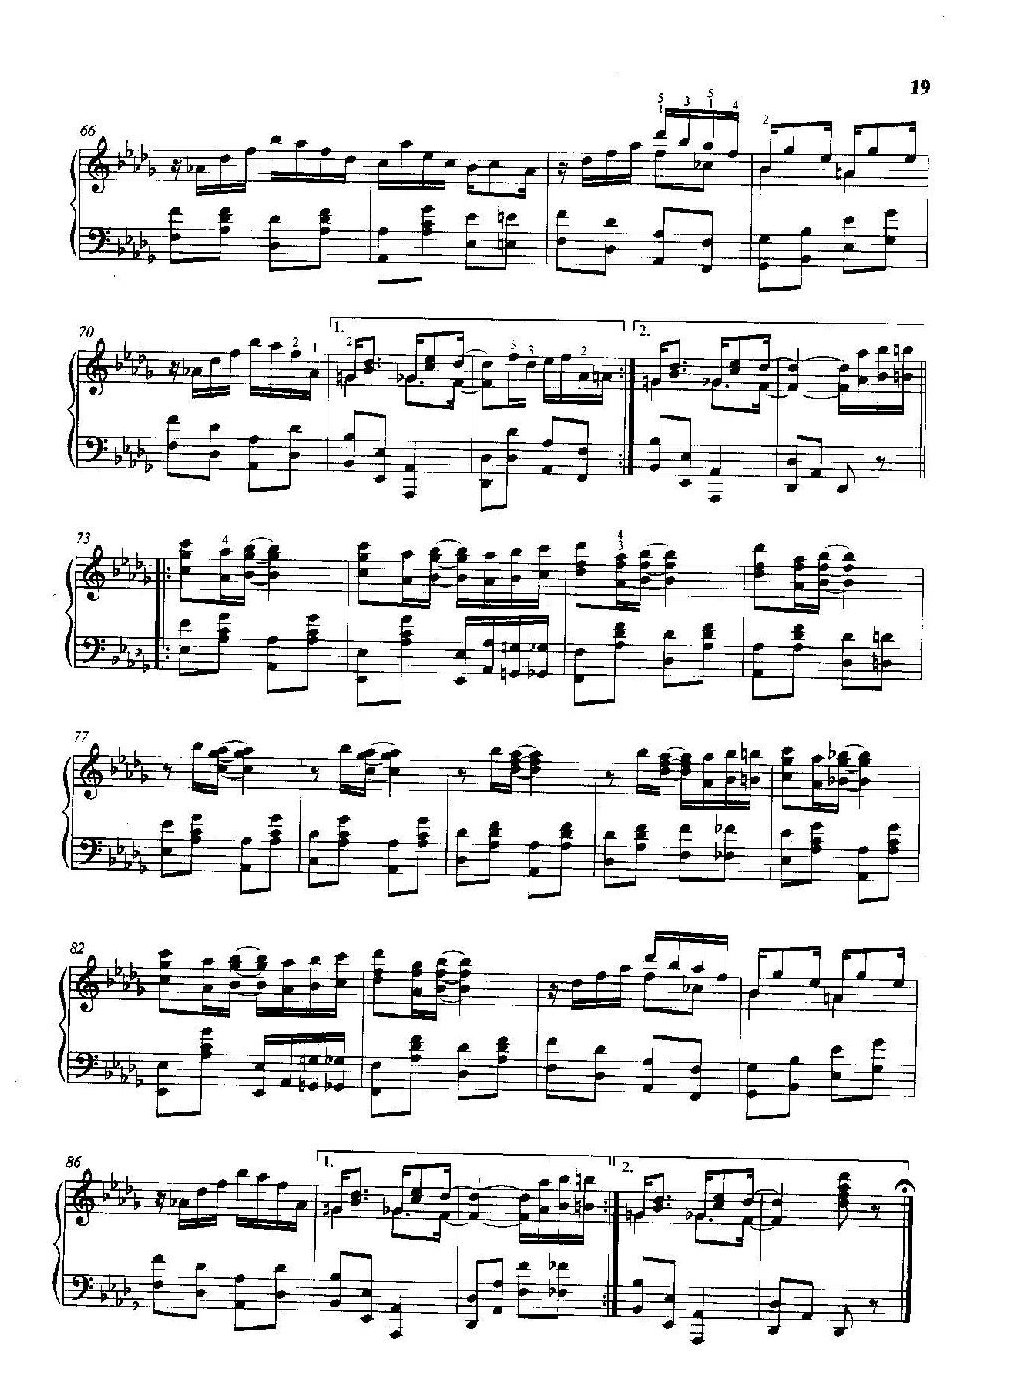 雷格泰姆钢琴乐谱《轻易取胜的人》雷格泰姆之王斯科特·乔普林